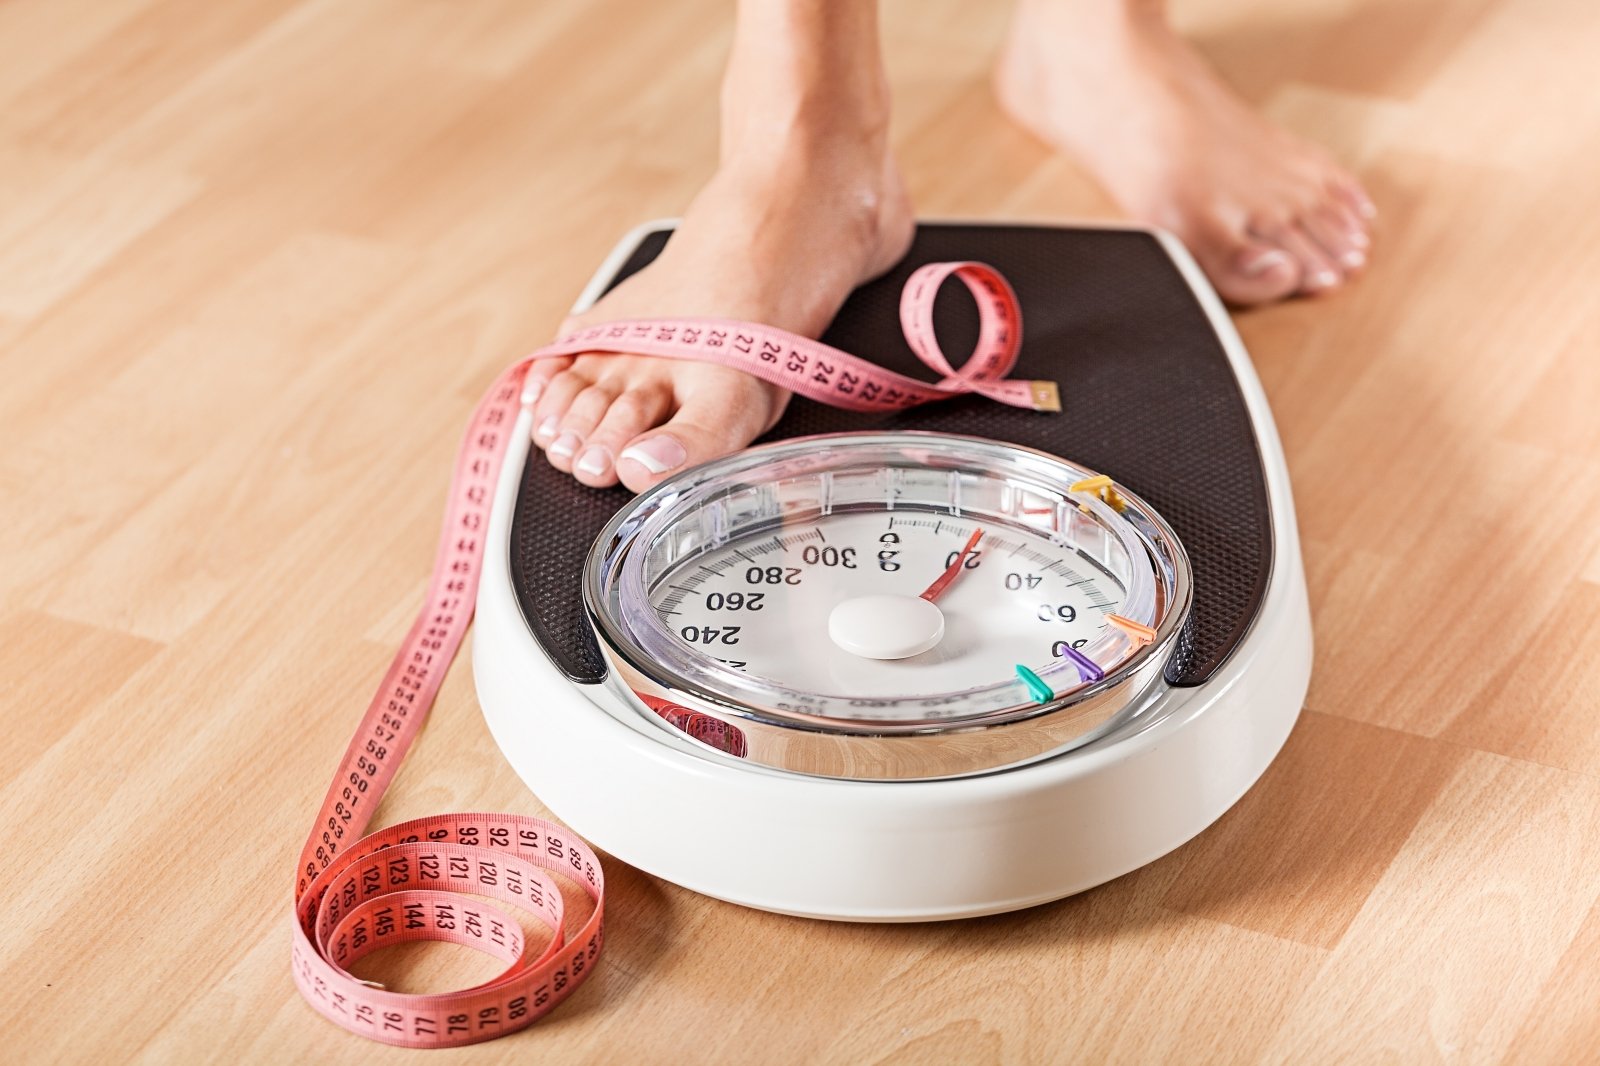 ar svorio darymas padeda numesti svorį gnc svorio kritimas